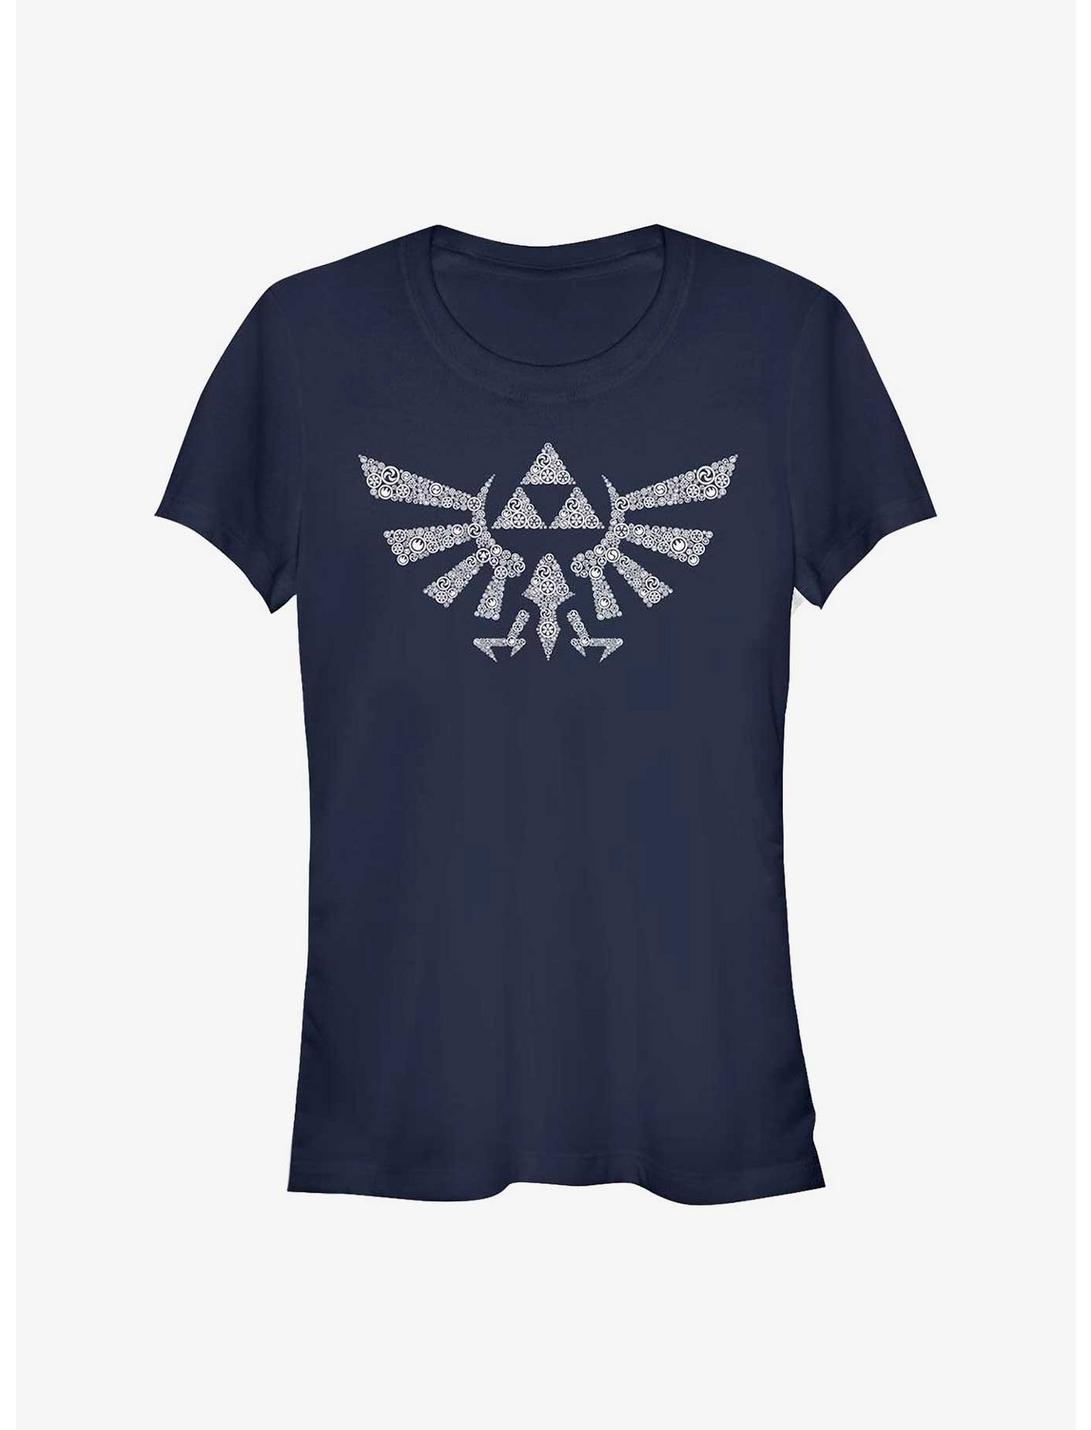 Nintendo Zelda Symbolled Crest Girls T-Shirt, NAVY, hi-res